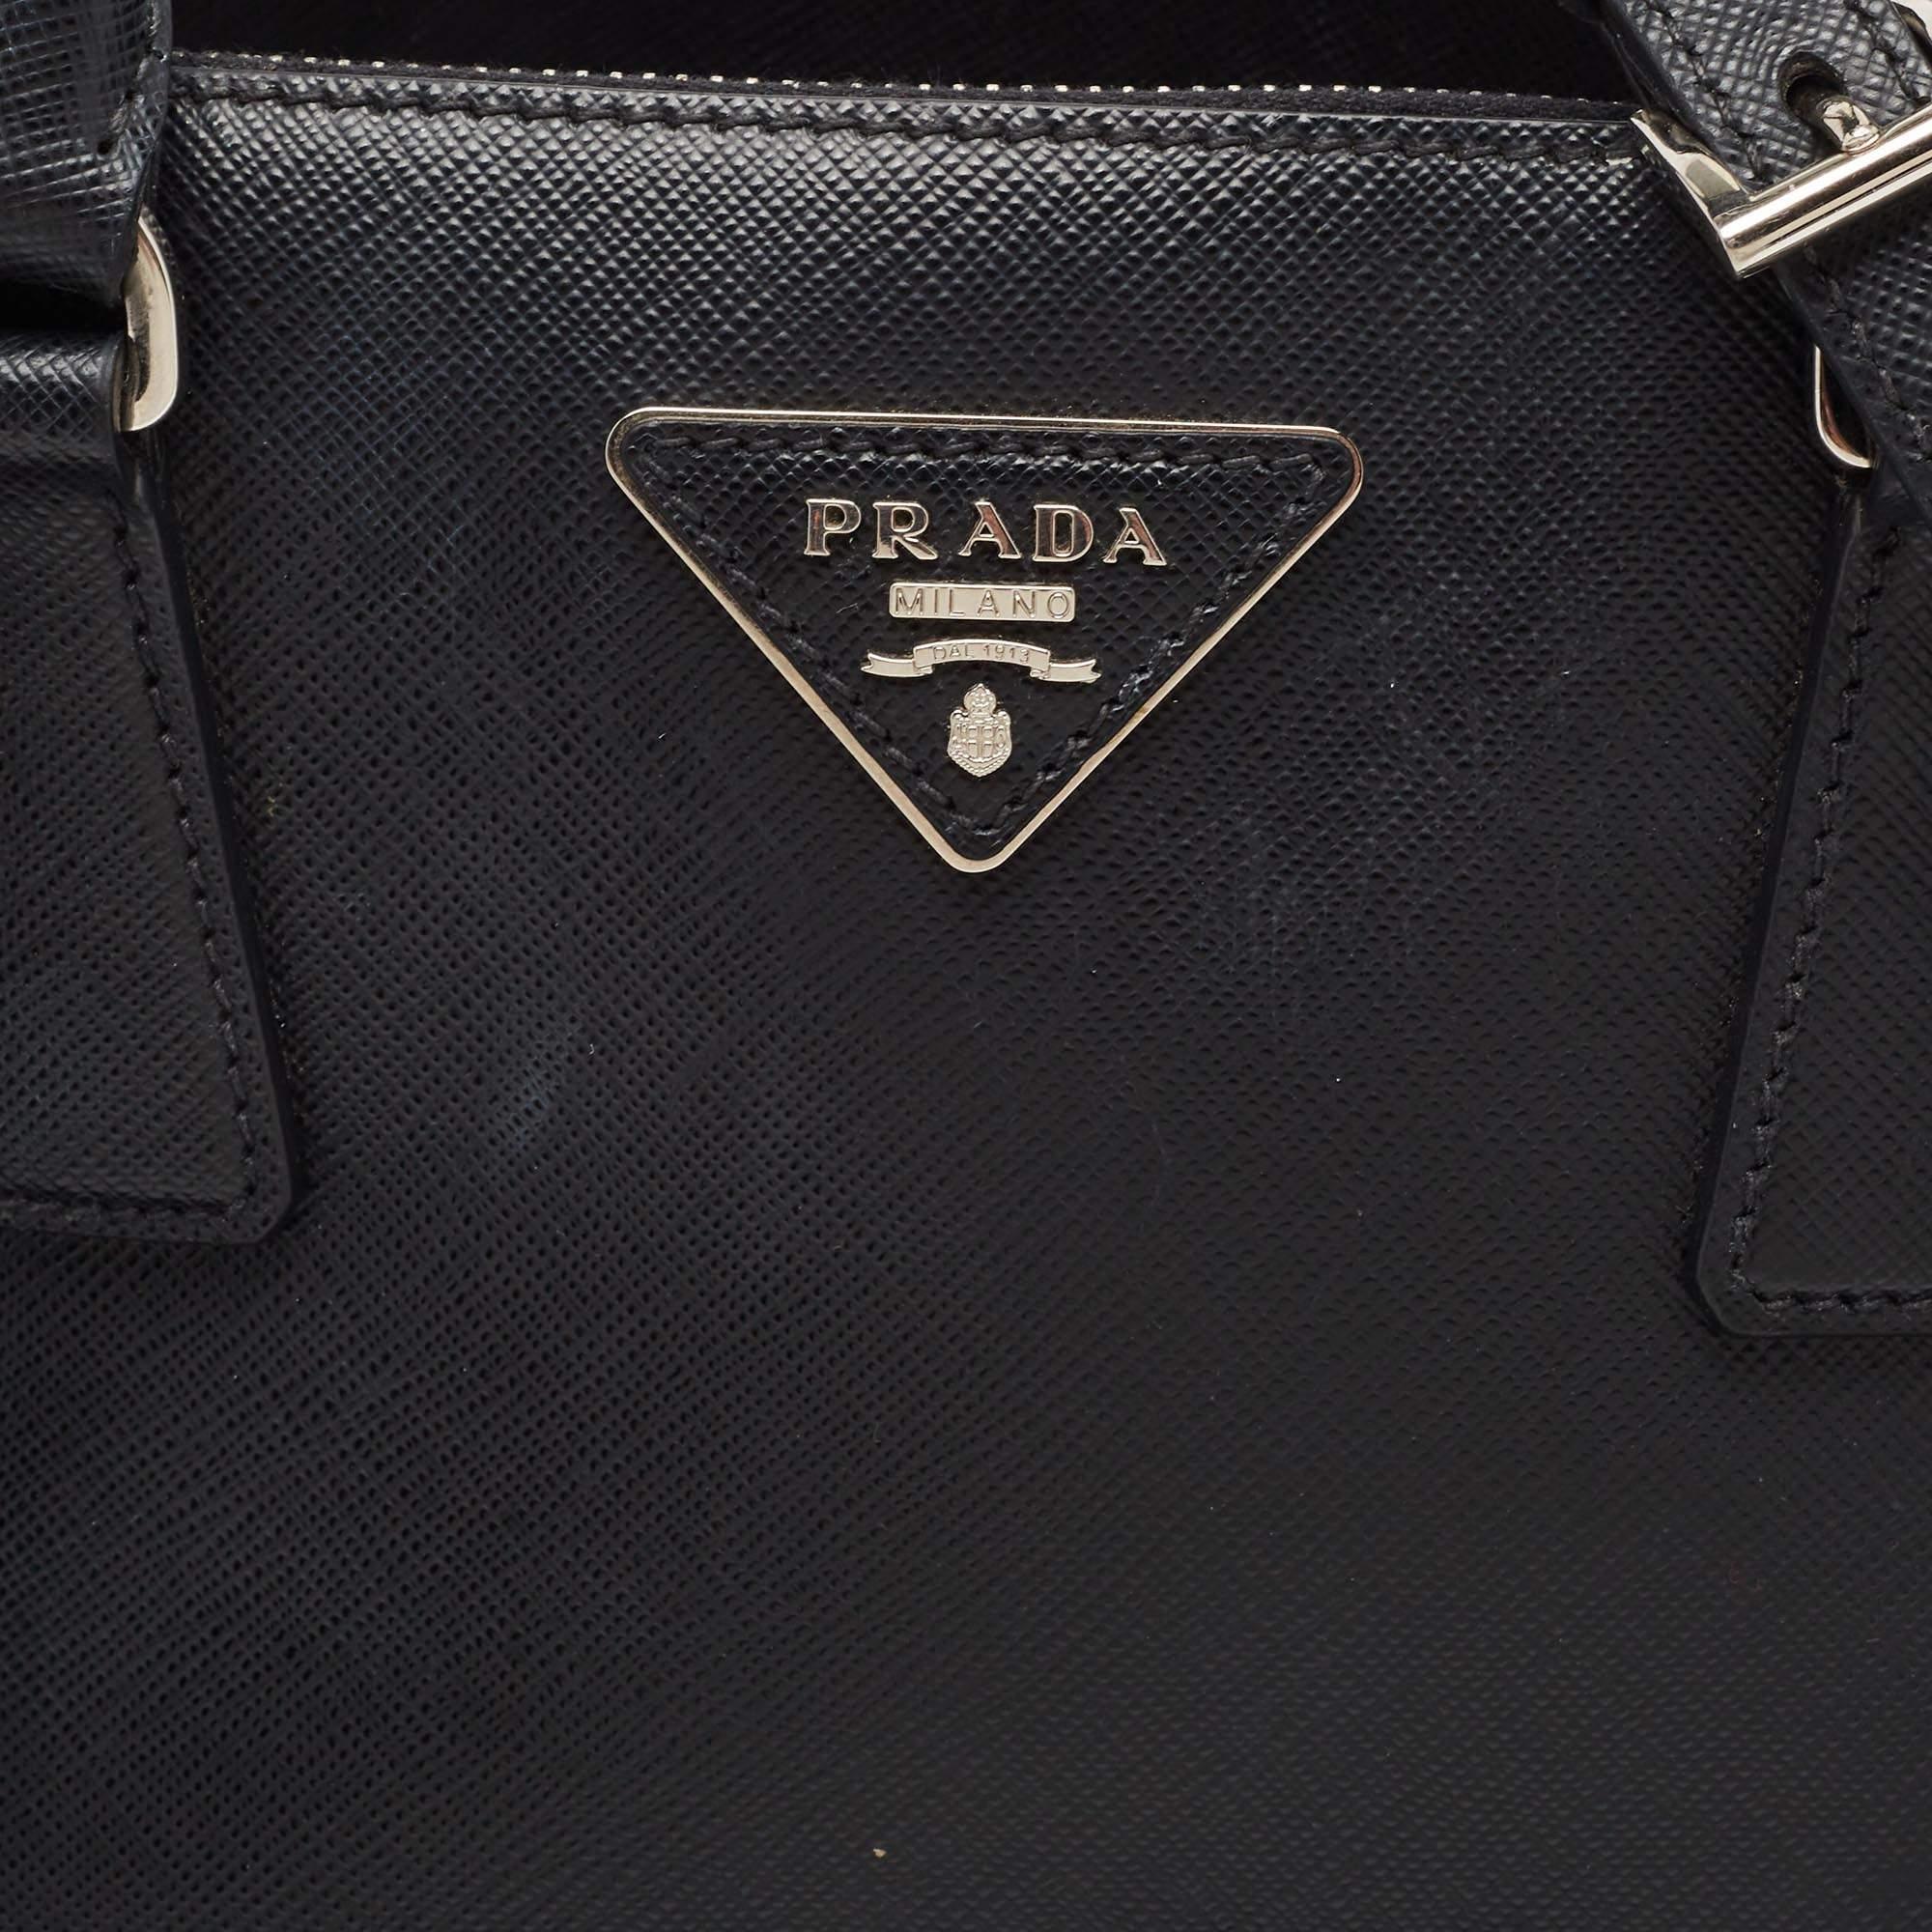 Prada Black/White Saffiano Lux Leather Small Galleria Tote 15